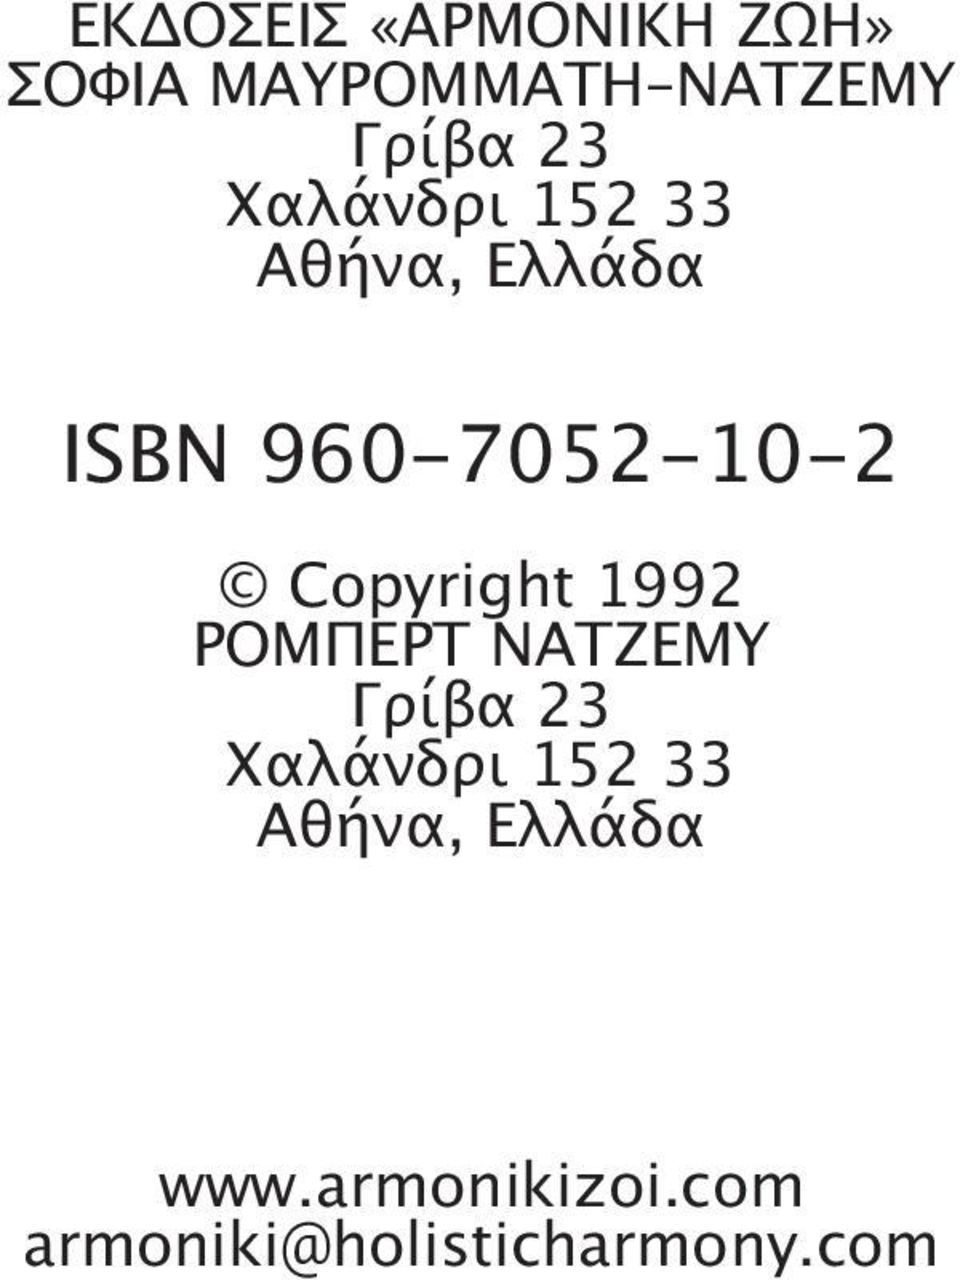 Copyright 1992 POMΠEPT NATZEMY Γρίβα 23 Xαλάνδρι 152 33